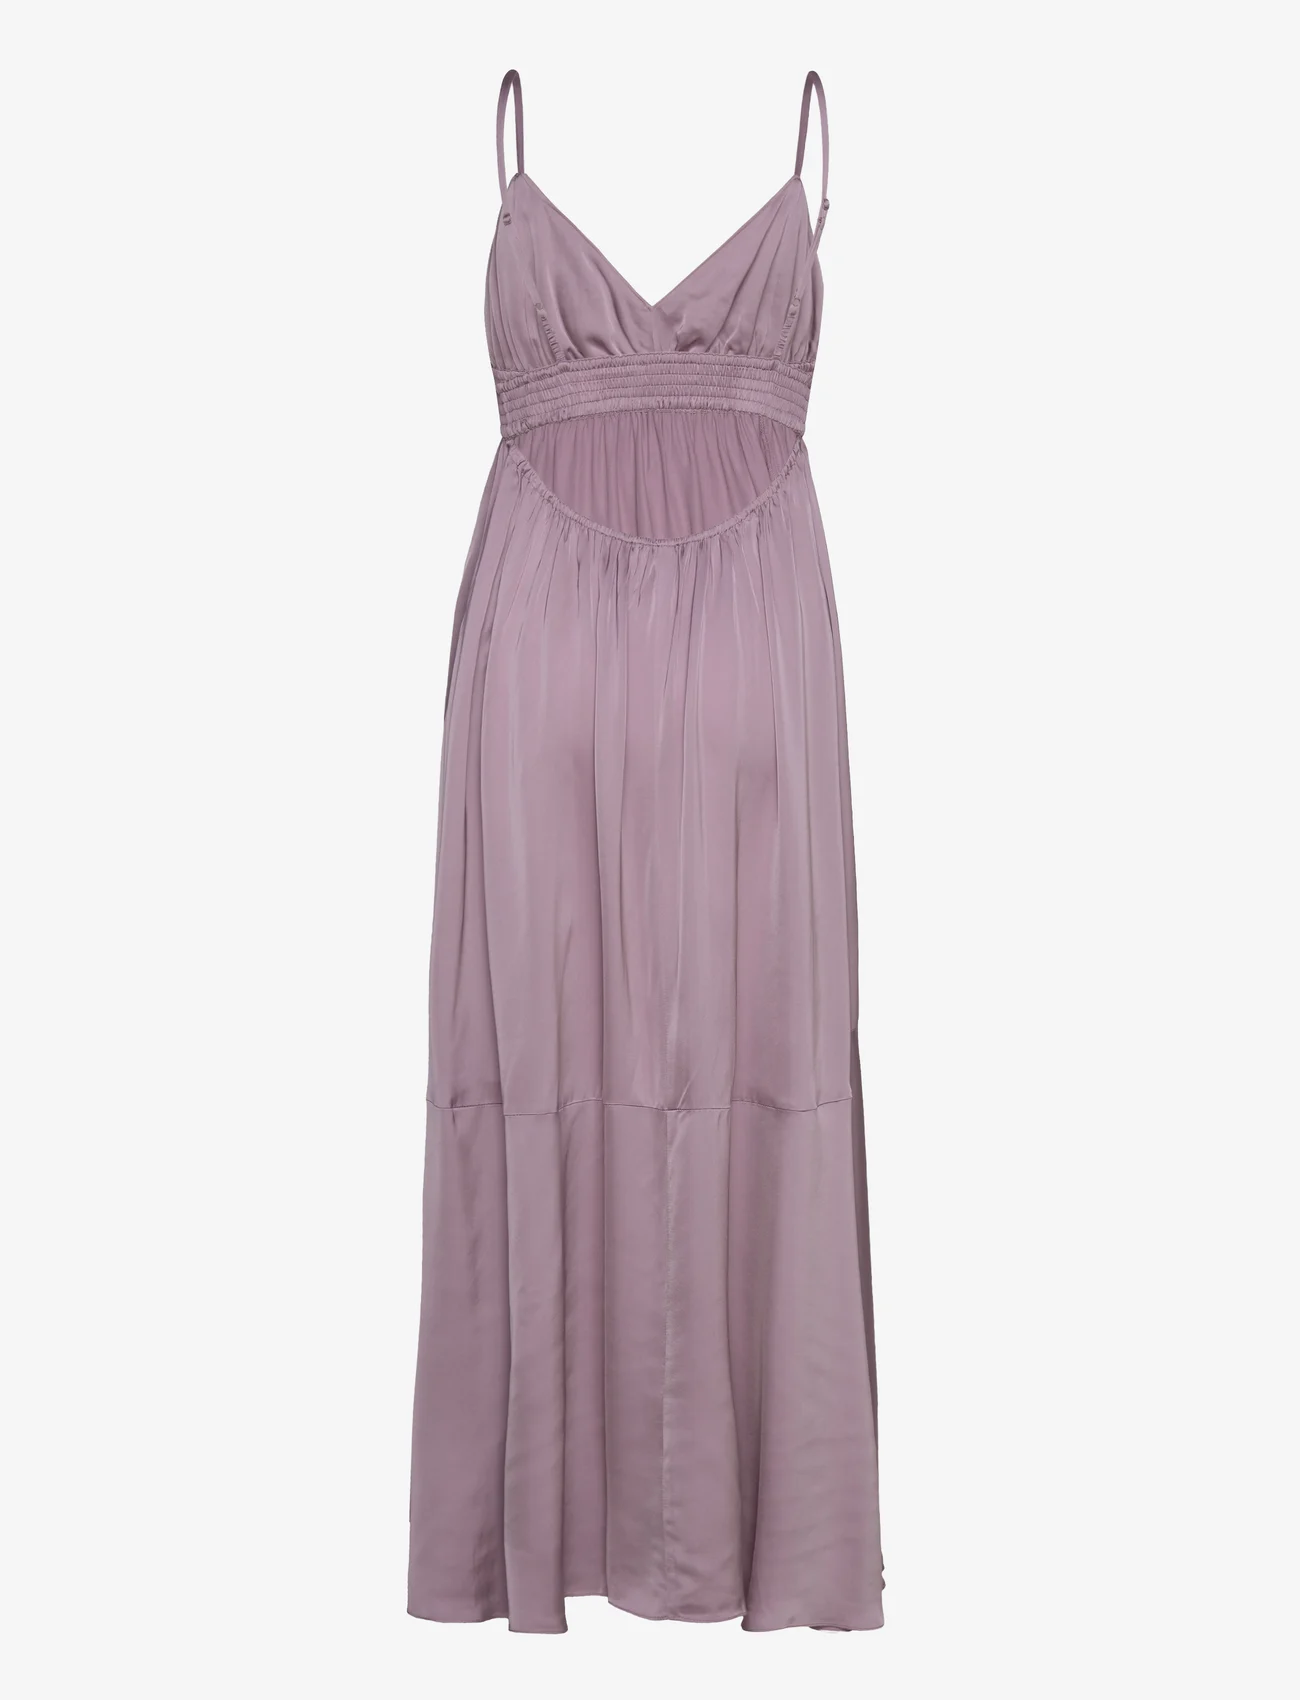 HUNKYDORY - Janine Strap Dress - slip kjoler - dusty lavender - 1